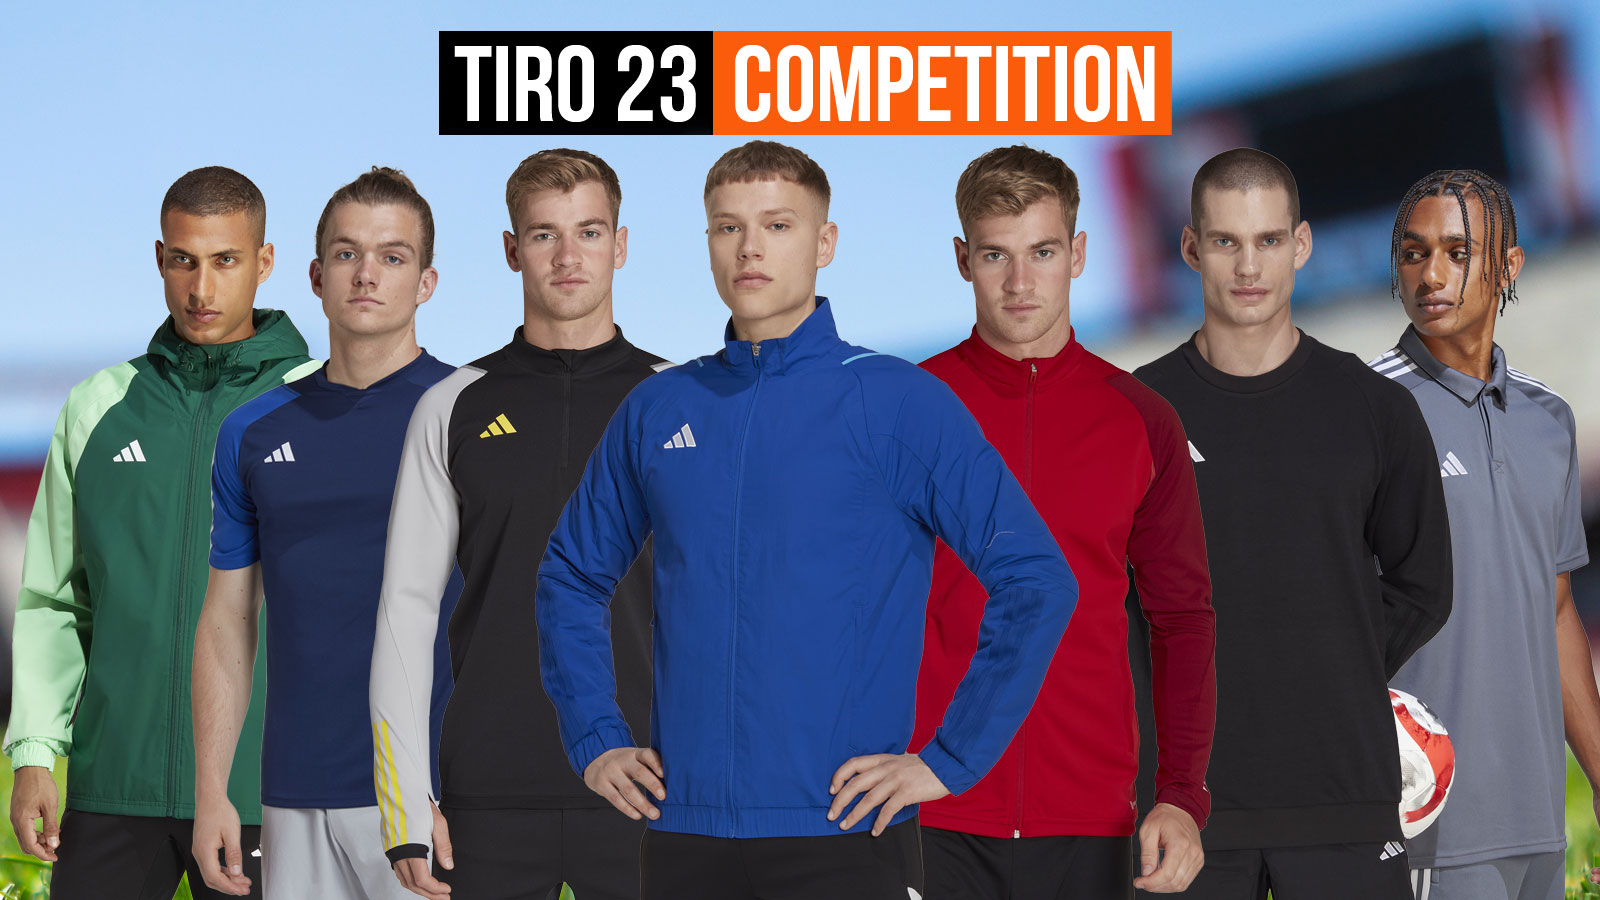 Die adidas Tiro 23 Competition Sportartikel im Teamsport Shop für deinen Verein bestellen